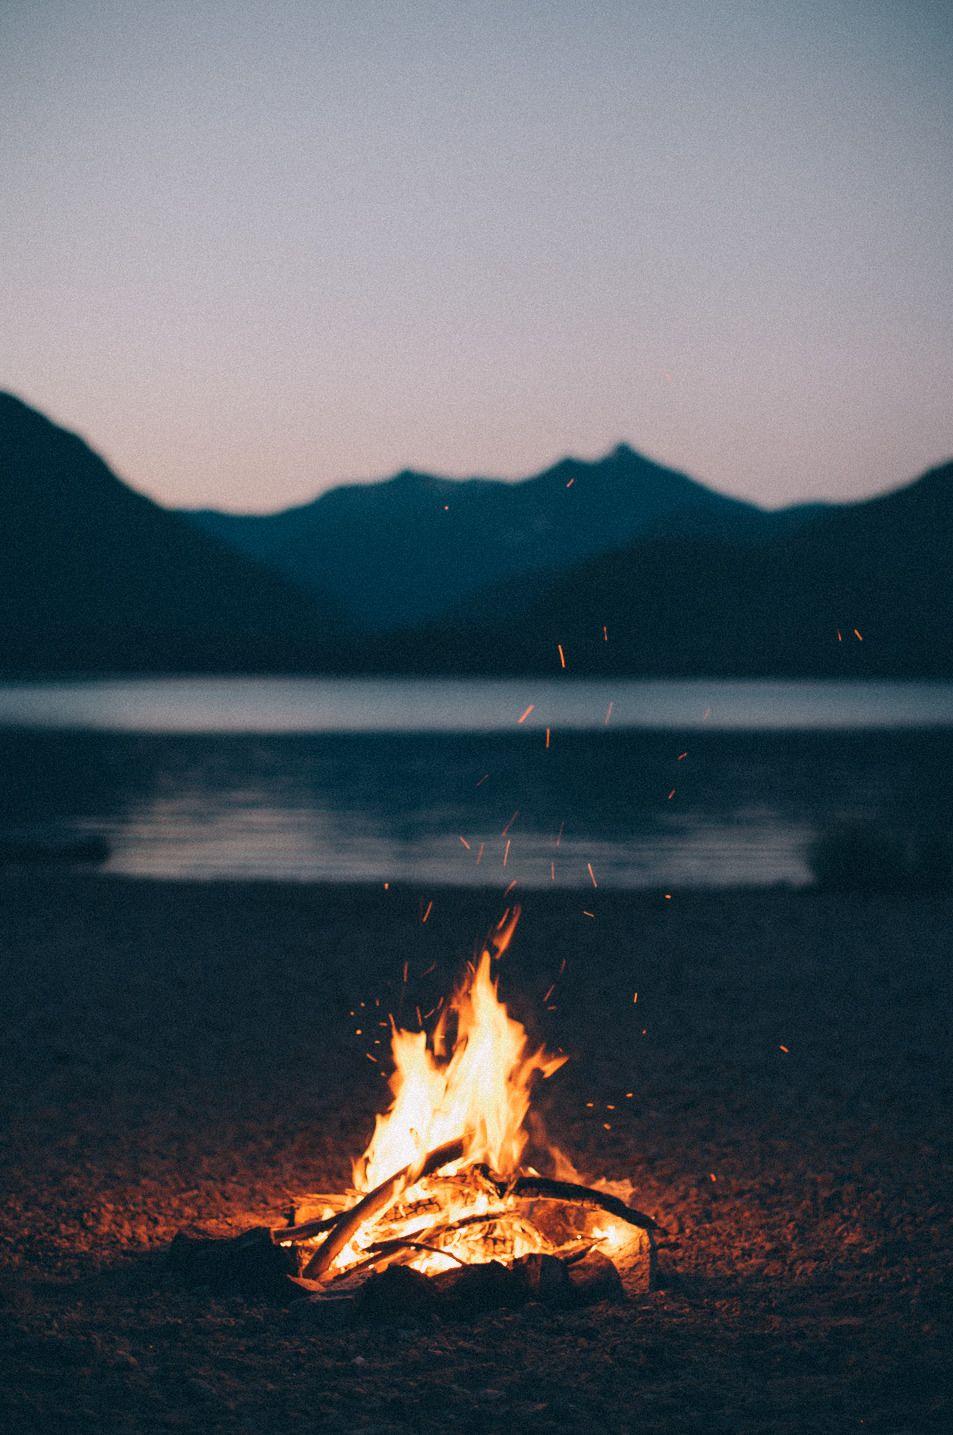 iPhone Wallpaper. Fire, Campfire, Bonfire, Flame, Heat, Sky